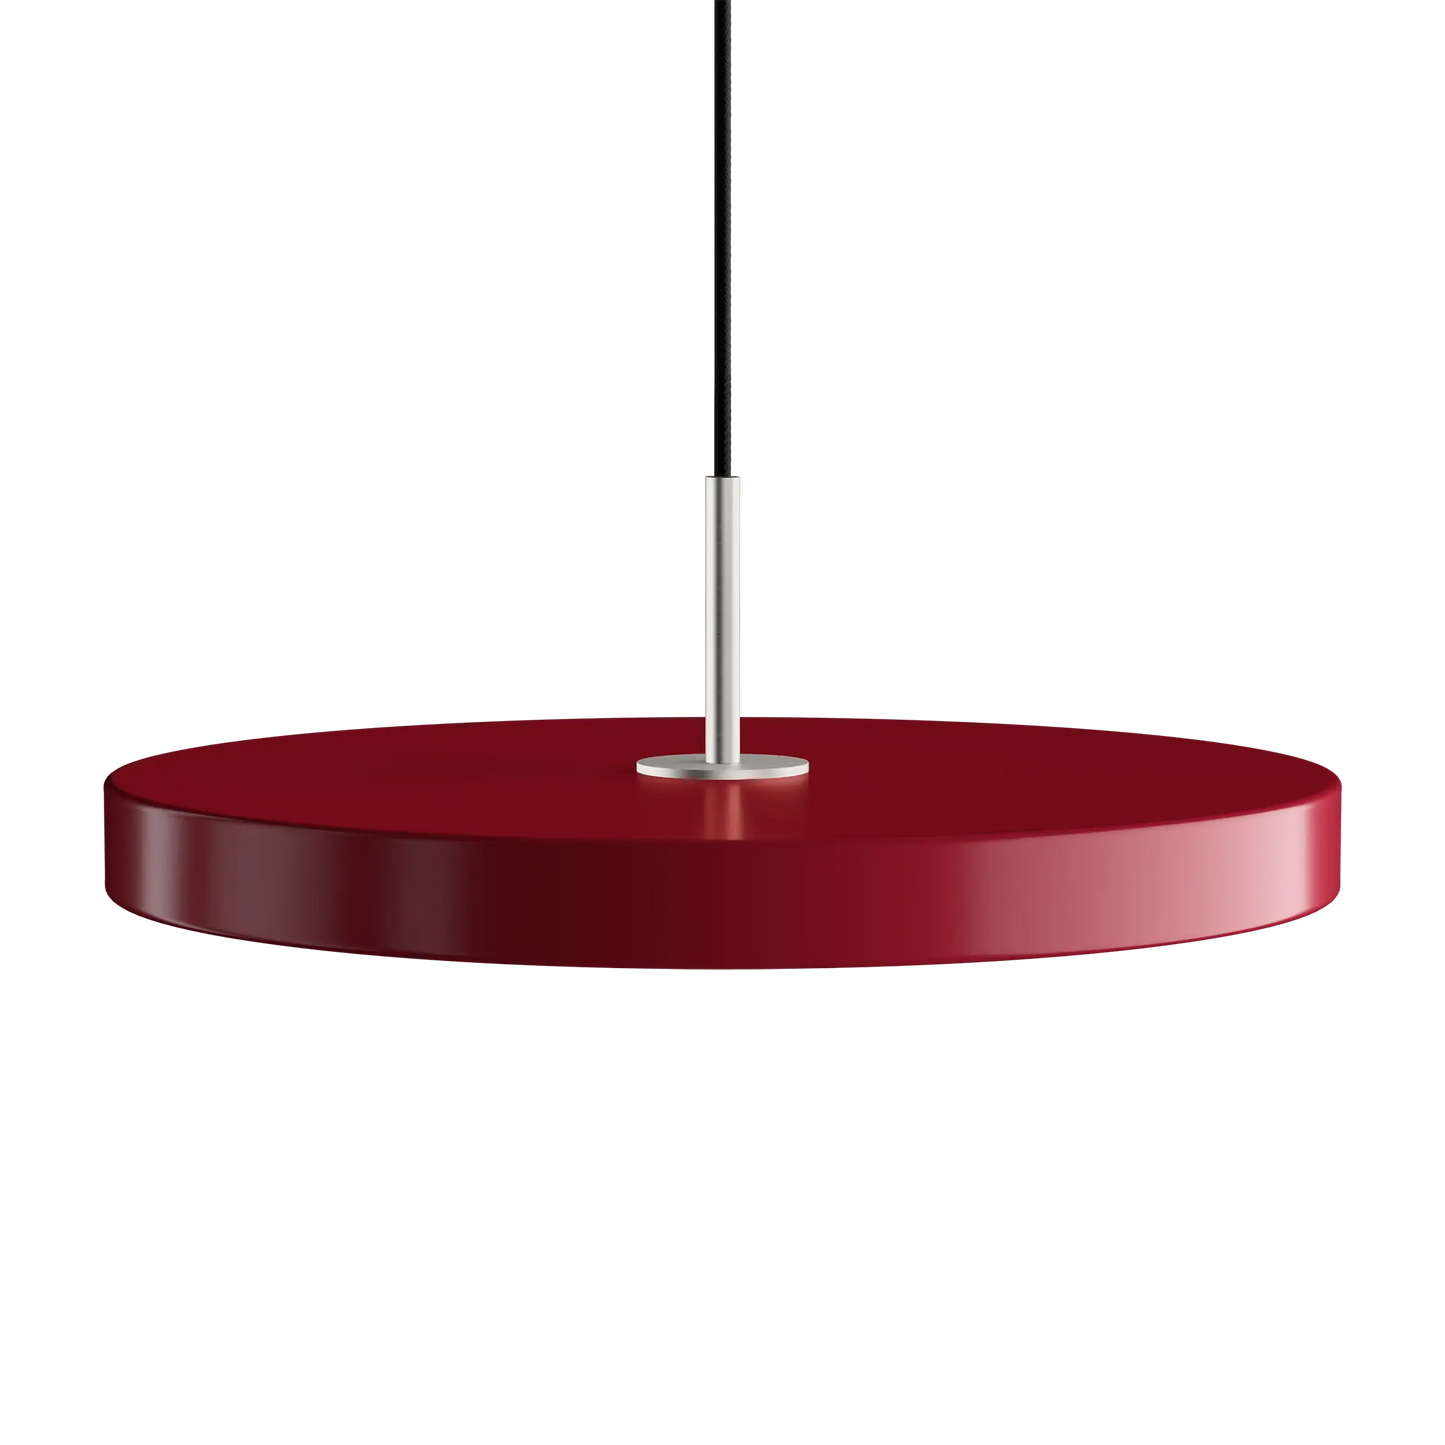 Asteria Medium taklampa med ståltop i färgen Ruby Red från Umage